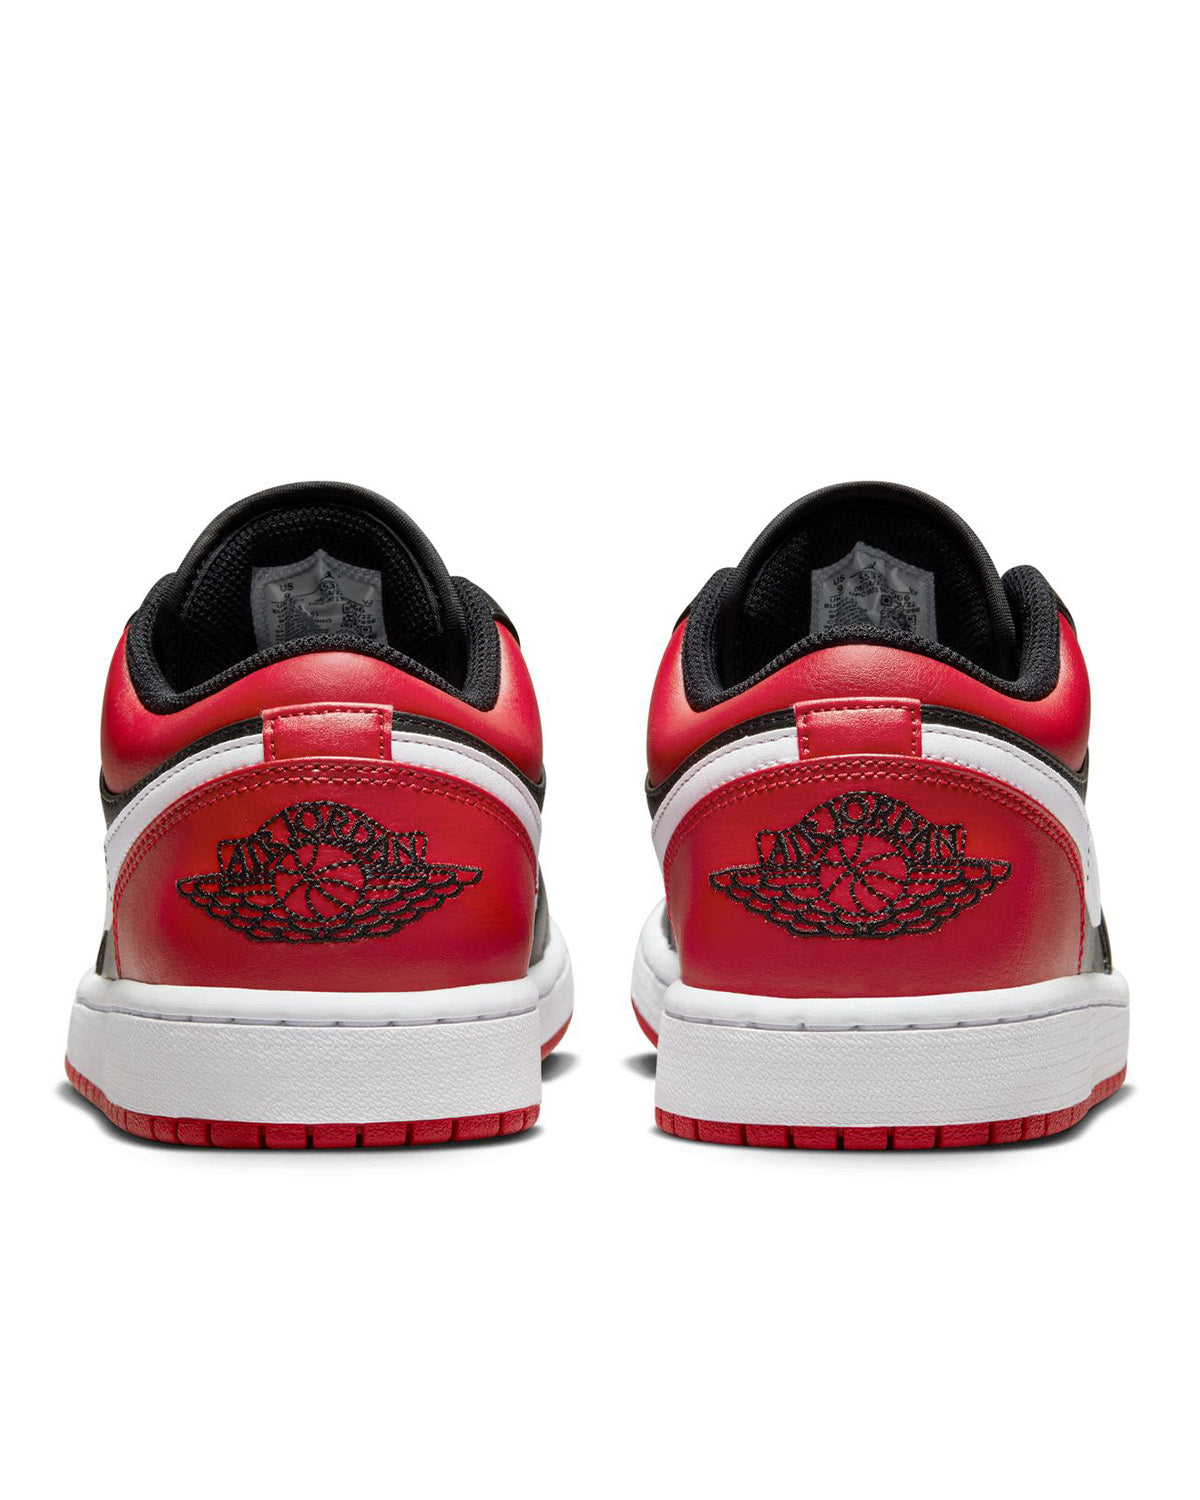 Air Jordan 1 Low Black/Gym Red/White